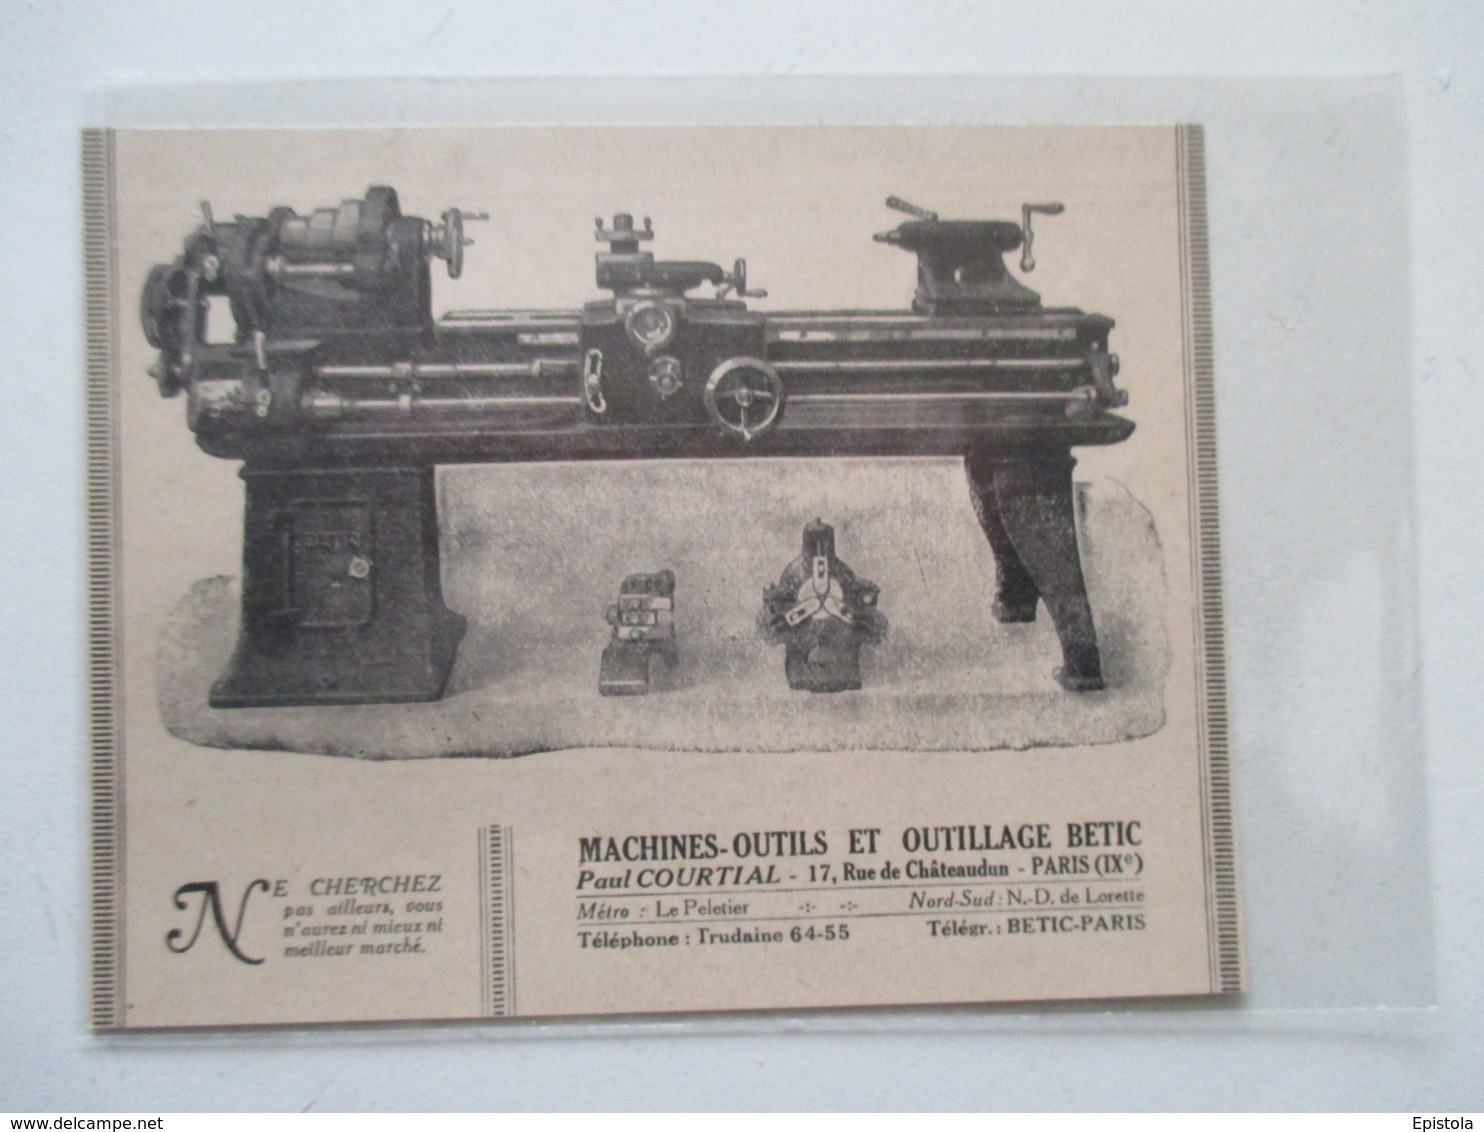 Machine Outil - Tour à Verniers BETIC     - Coupure De Presse De 1921 - Altri Apparecchi